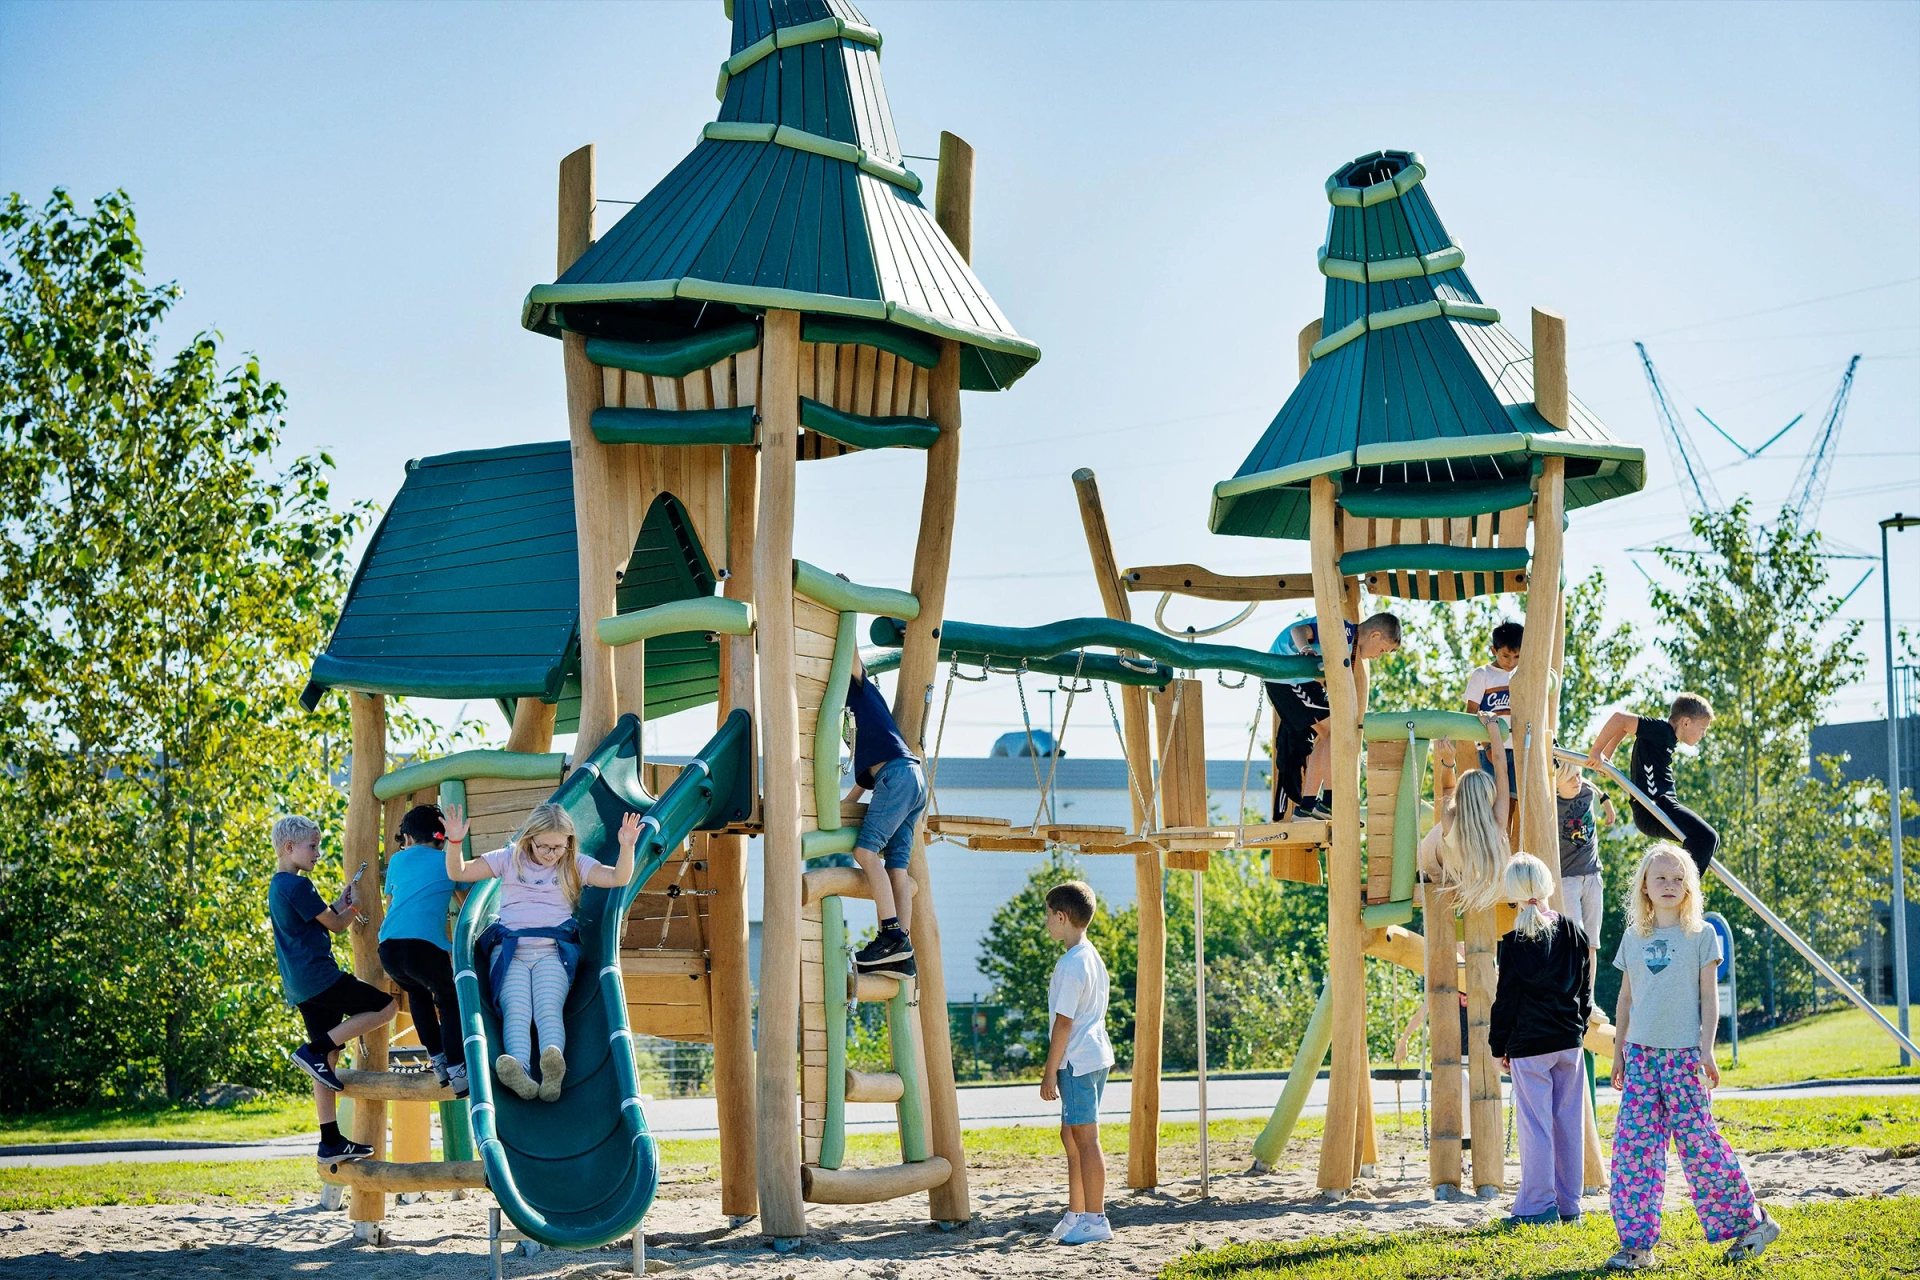 Structures de jeu en bois à thème fantastique avec des enfants